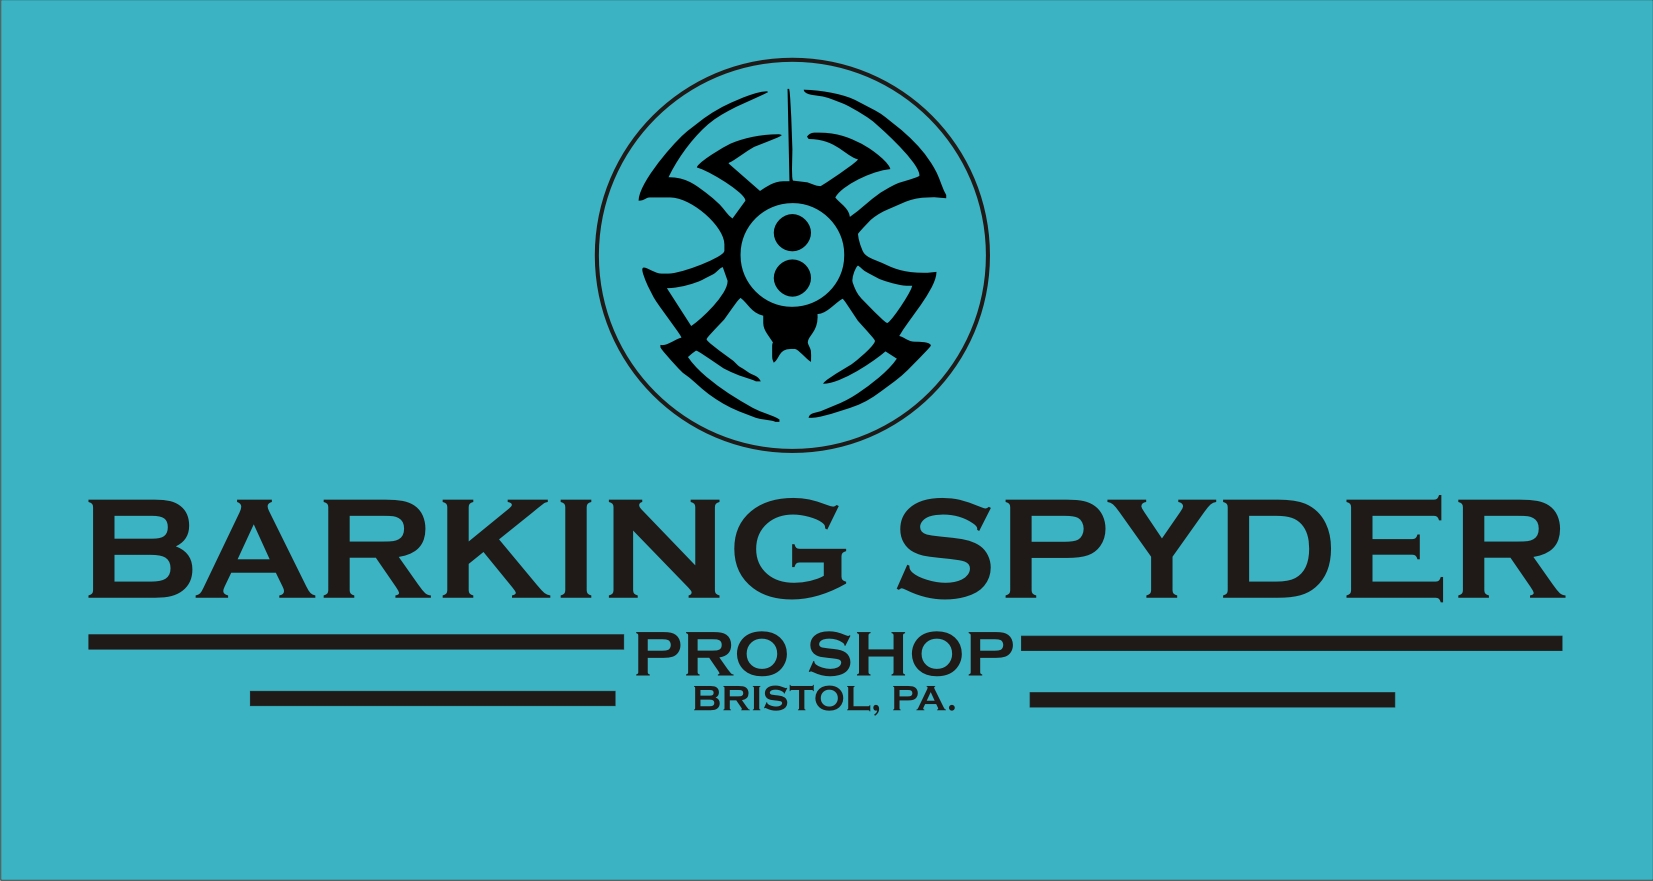 Barking Spyder Pro Shop